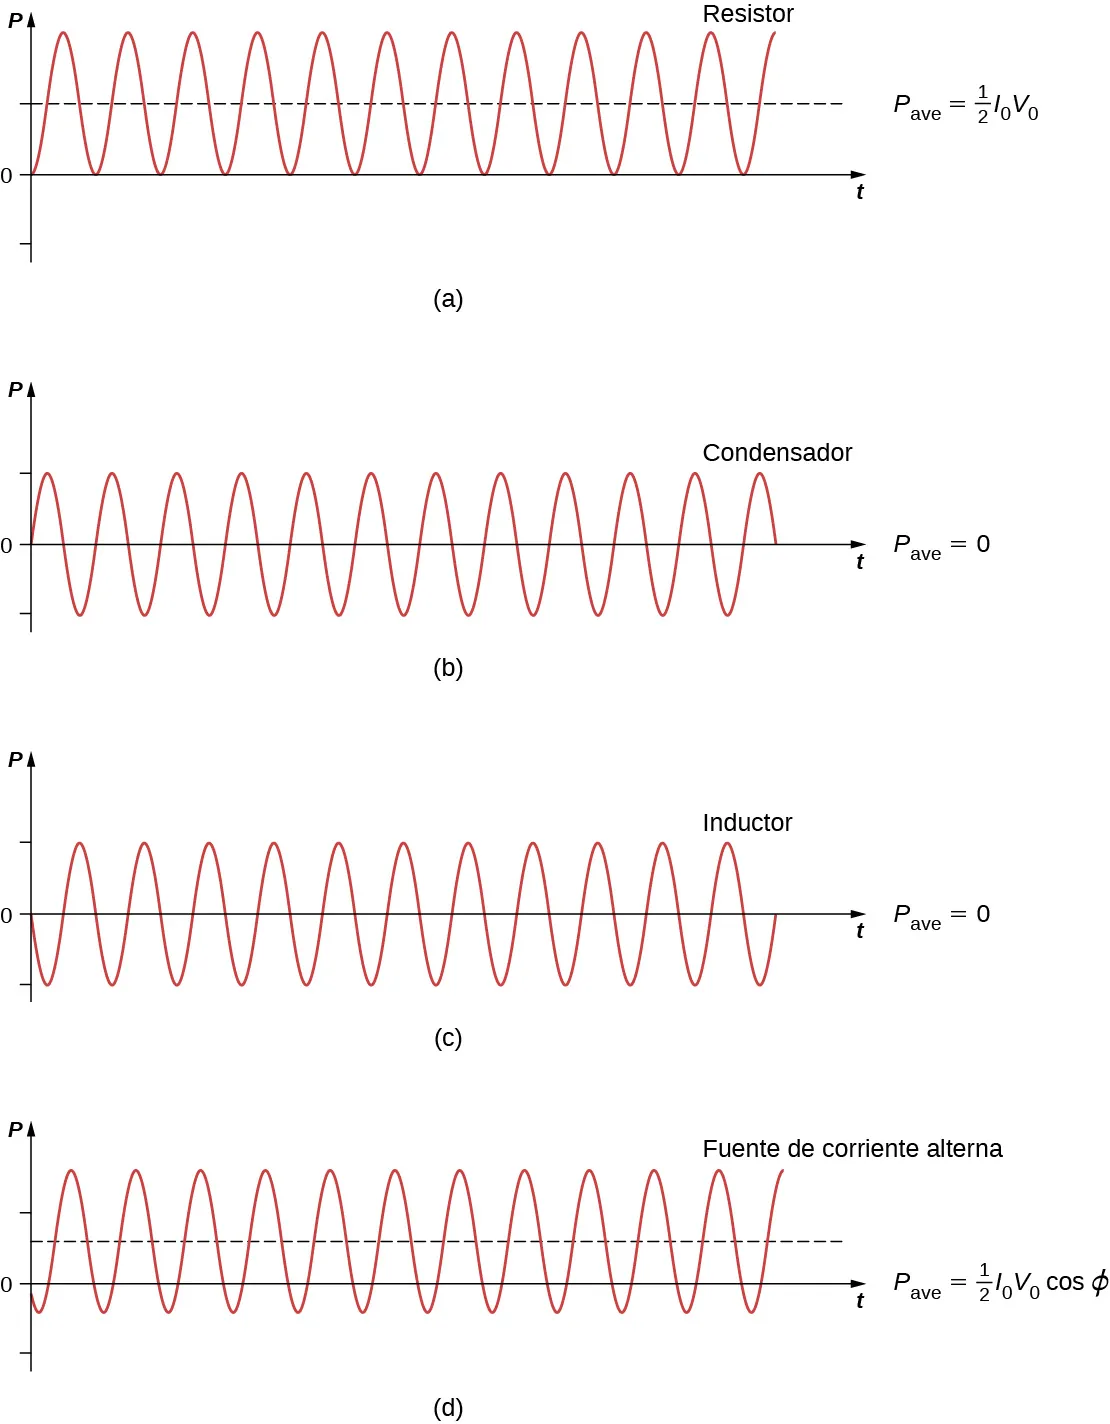 Las figuras de la a a la d muestran las ondas sinusoidales en los gráficos de P versus t. Todos tienen la misma amplitud y frecuencia. La figura a está marcada como resistor. La barra P es igual a la mitad de I0 V0. La onda sinusoidal está por encima del eje de las x, siendo 0 el valor mínimo de la y. Comienza en un valle. La figura b está marcada como condensador. La barra P es igual a 0. La posición de equilibrio de la onda sinusoidal está en el eje x. Comienza en equilibrio con una pendiente positiva. La figura c está marcada como inductor. La barra P es igual a 0. La posición de equilibrio de la onda sinusoidal está en el eje x. Comienza en el equilibrio con una pendiente negativa. La figura d está marcada como fuente de ac. La barra P es igual a la mitad de I0 V0 cos de phi. La posición de equilibrio de la onda sinusoidal está por encima del eje de las x, y su valor mínimo en el eje y es negativo.